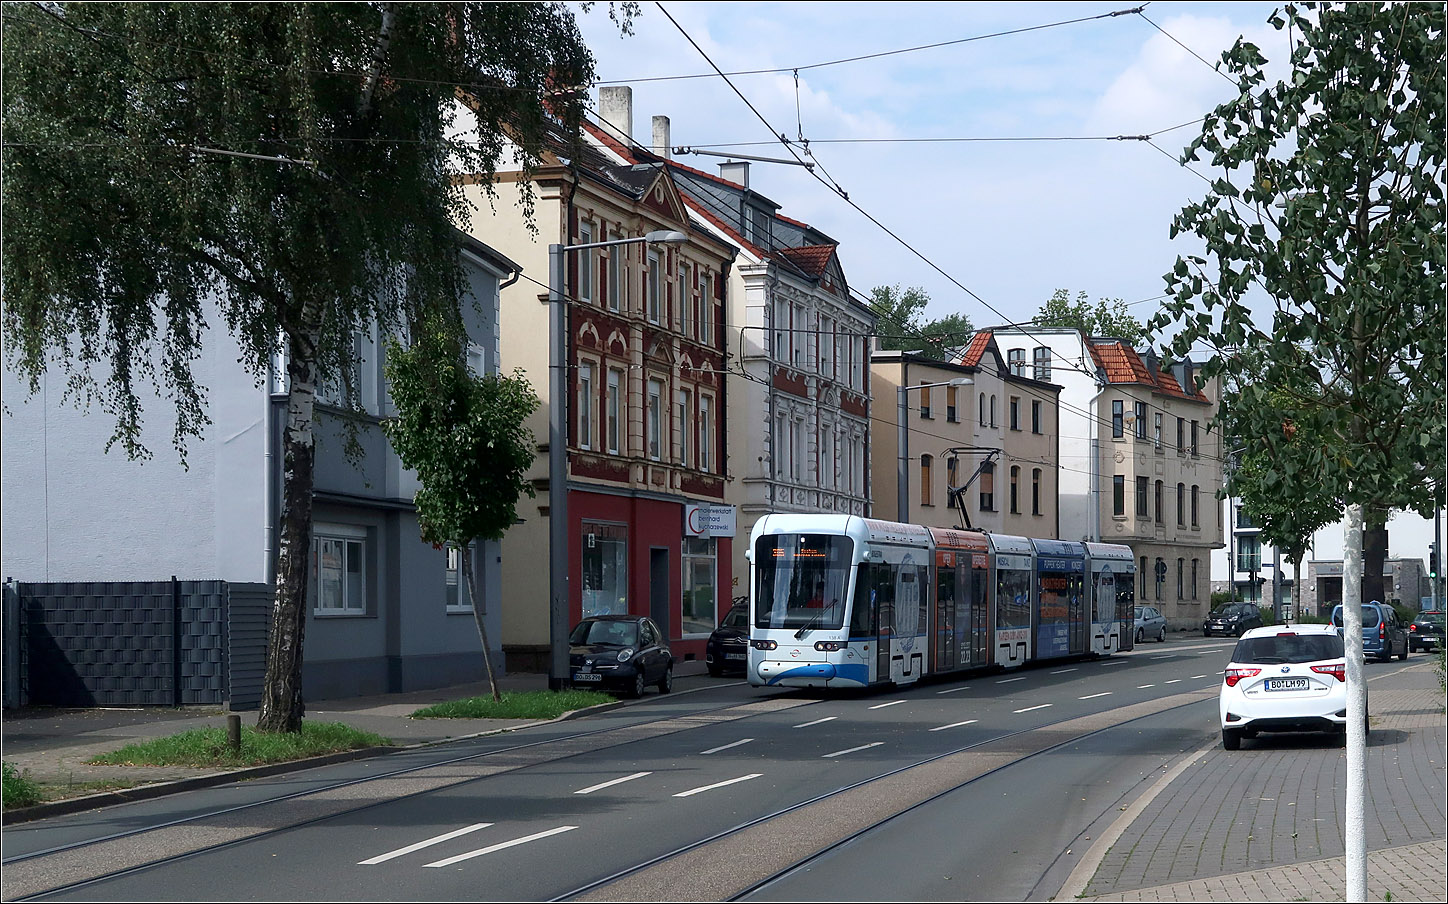 Eine Straßenbahn-Neubaustrecke in Bochum-Langendreer. 

Am Marktplatz von Langendreer gibt es auch einen kurzen Abzweig nach Norden zur dortigen S-Bahnstation. Hier Stadler Variobahn 138 in der Langendreer Hauptstraße.

22.08.2023 (M)